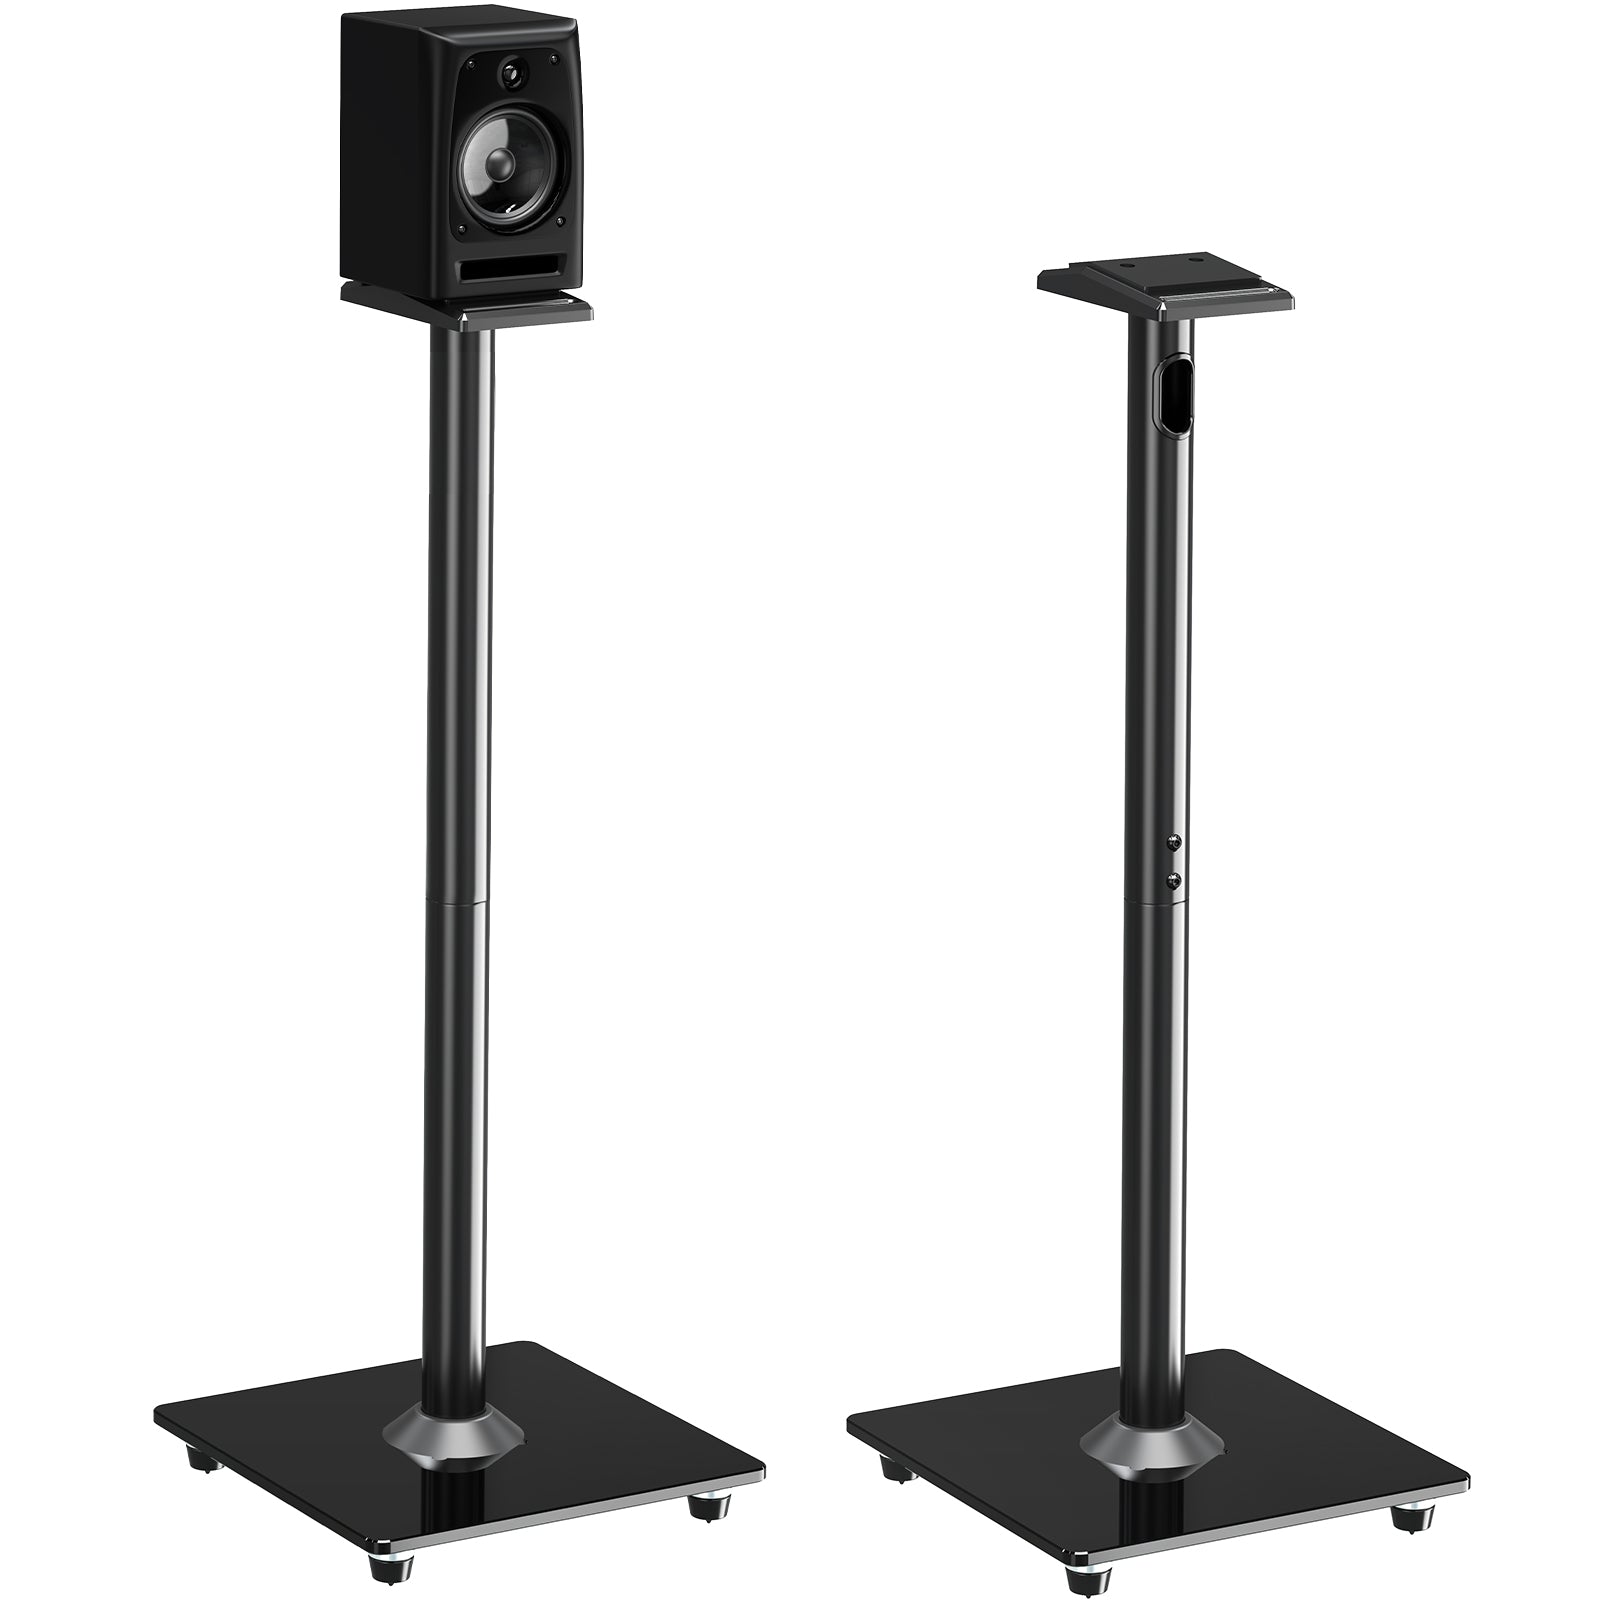 MOUNTUP Universal Wireless Speaker Stand MU9136